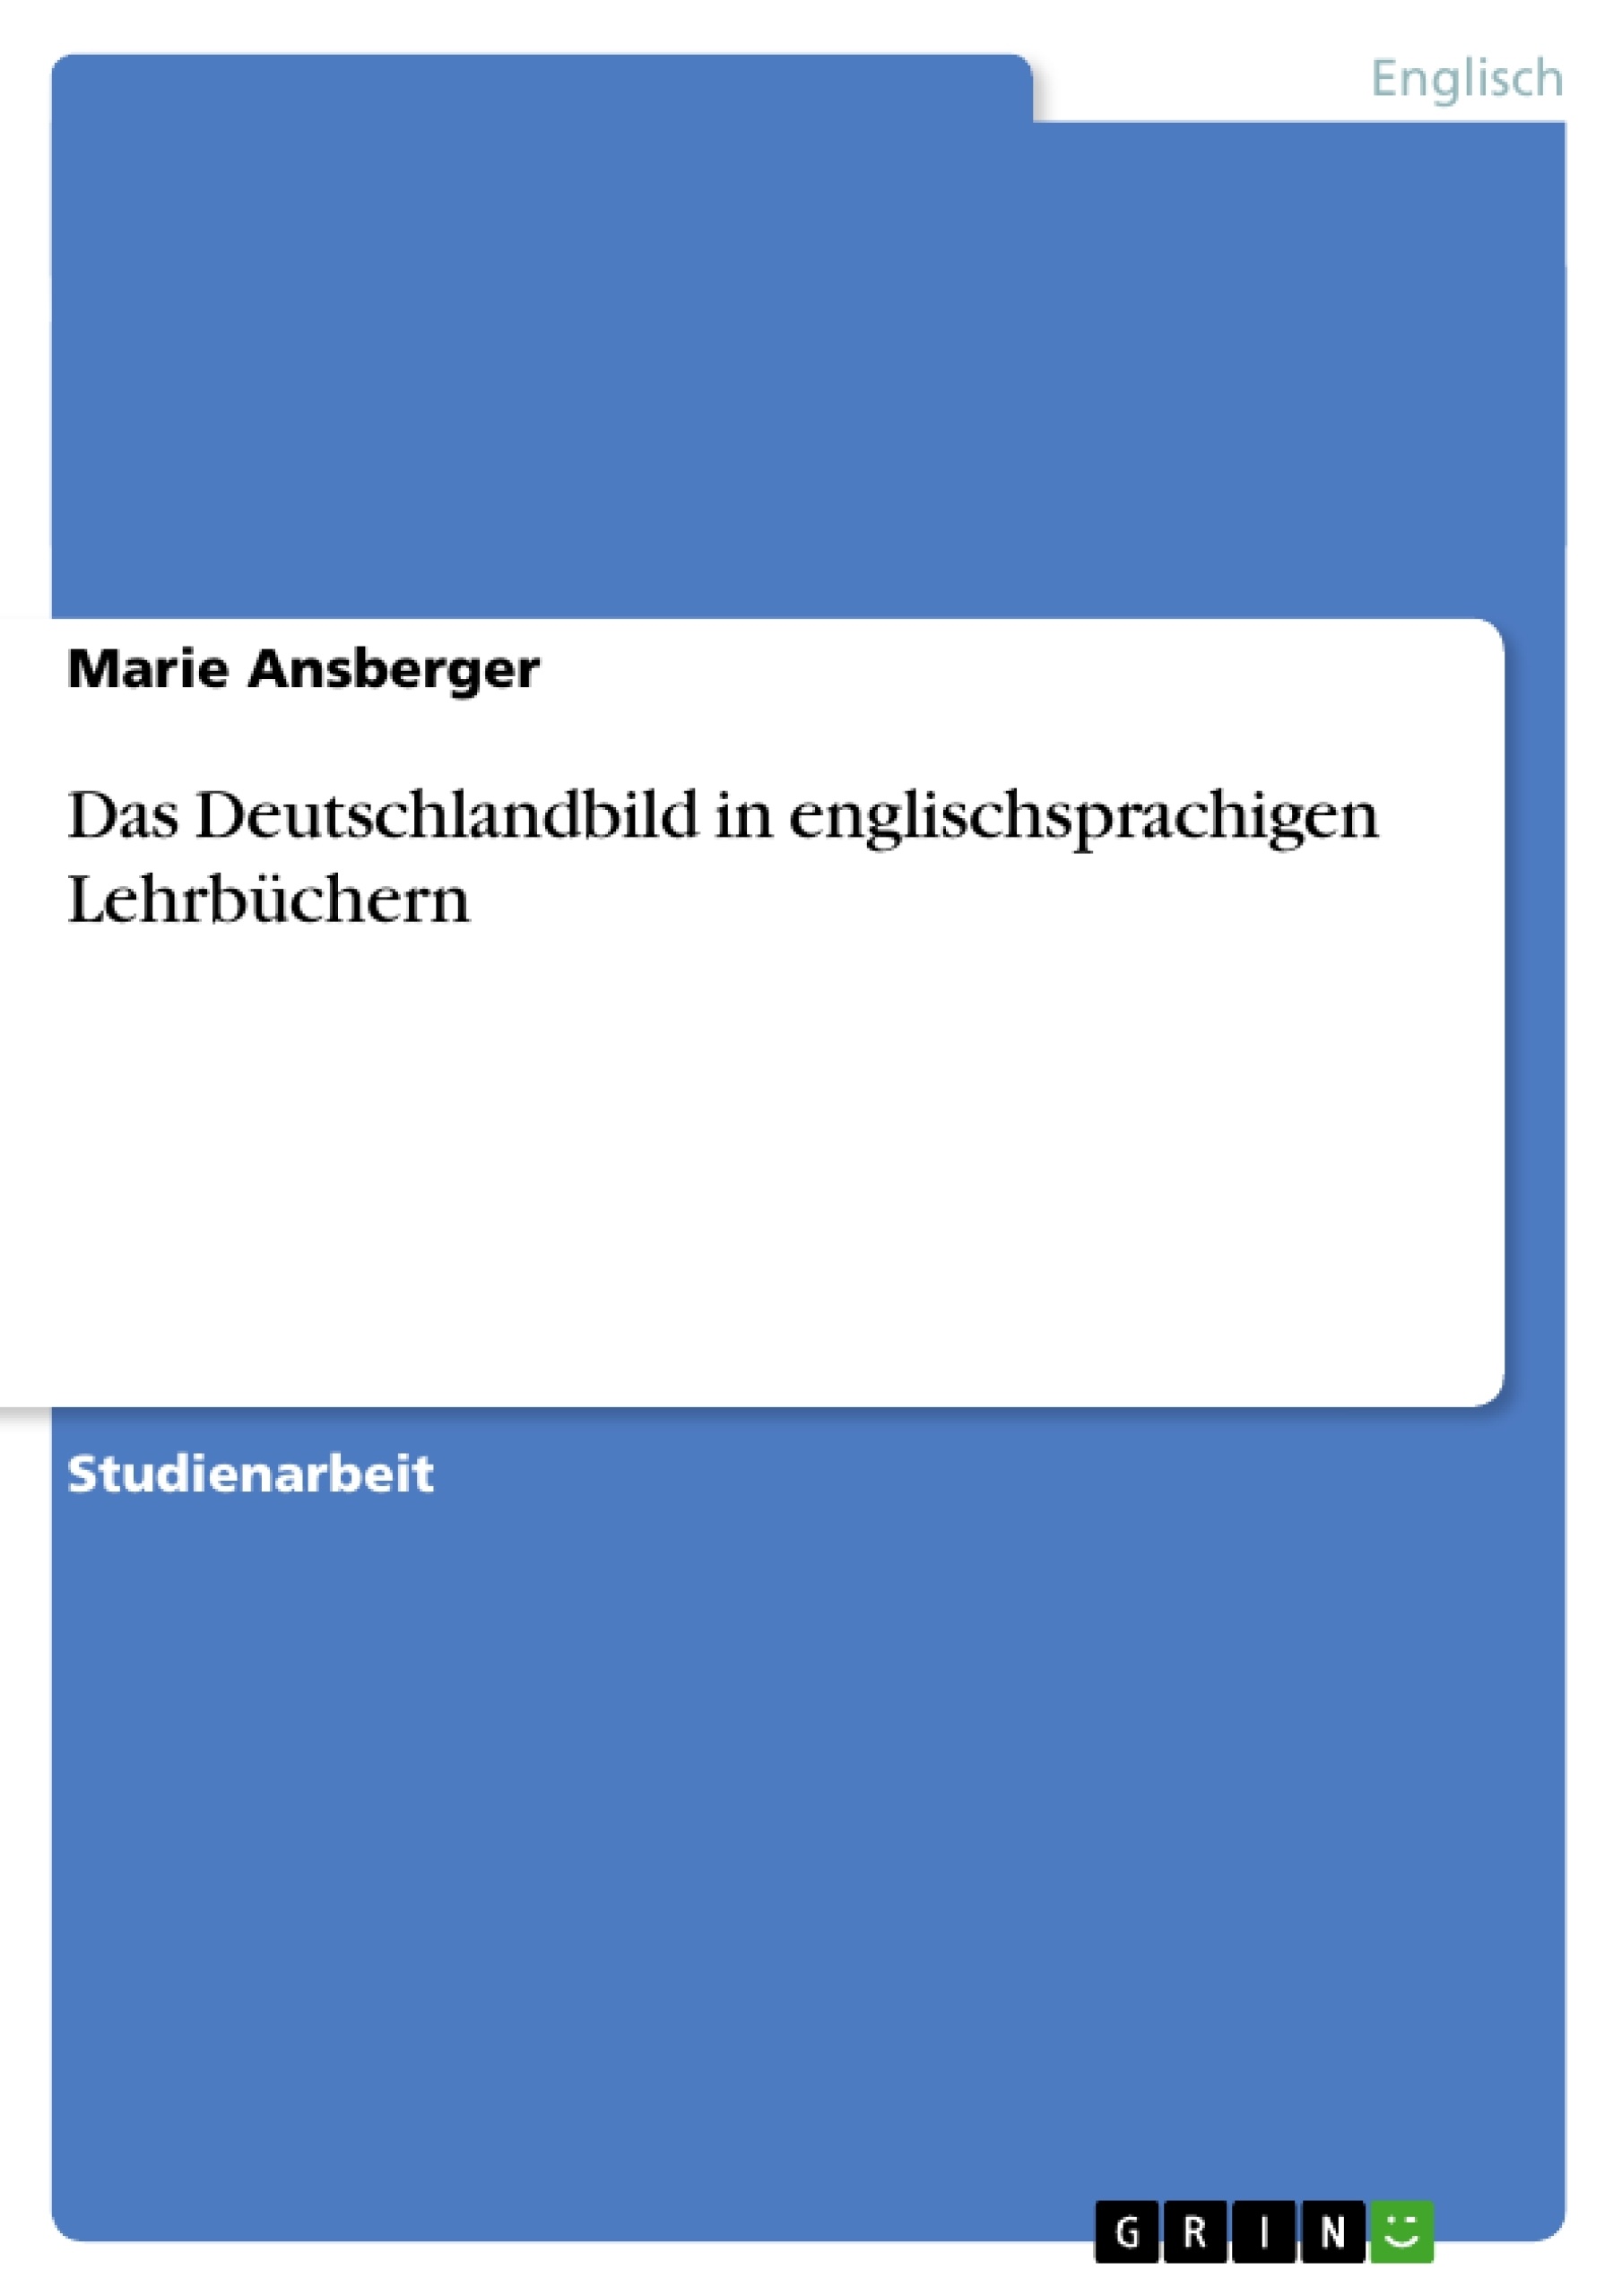 Title: Das Deutschlandbild in englischsprachigen Lehrbüchern